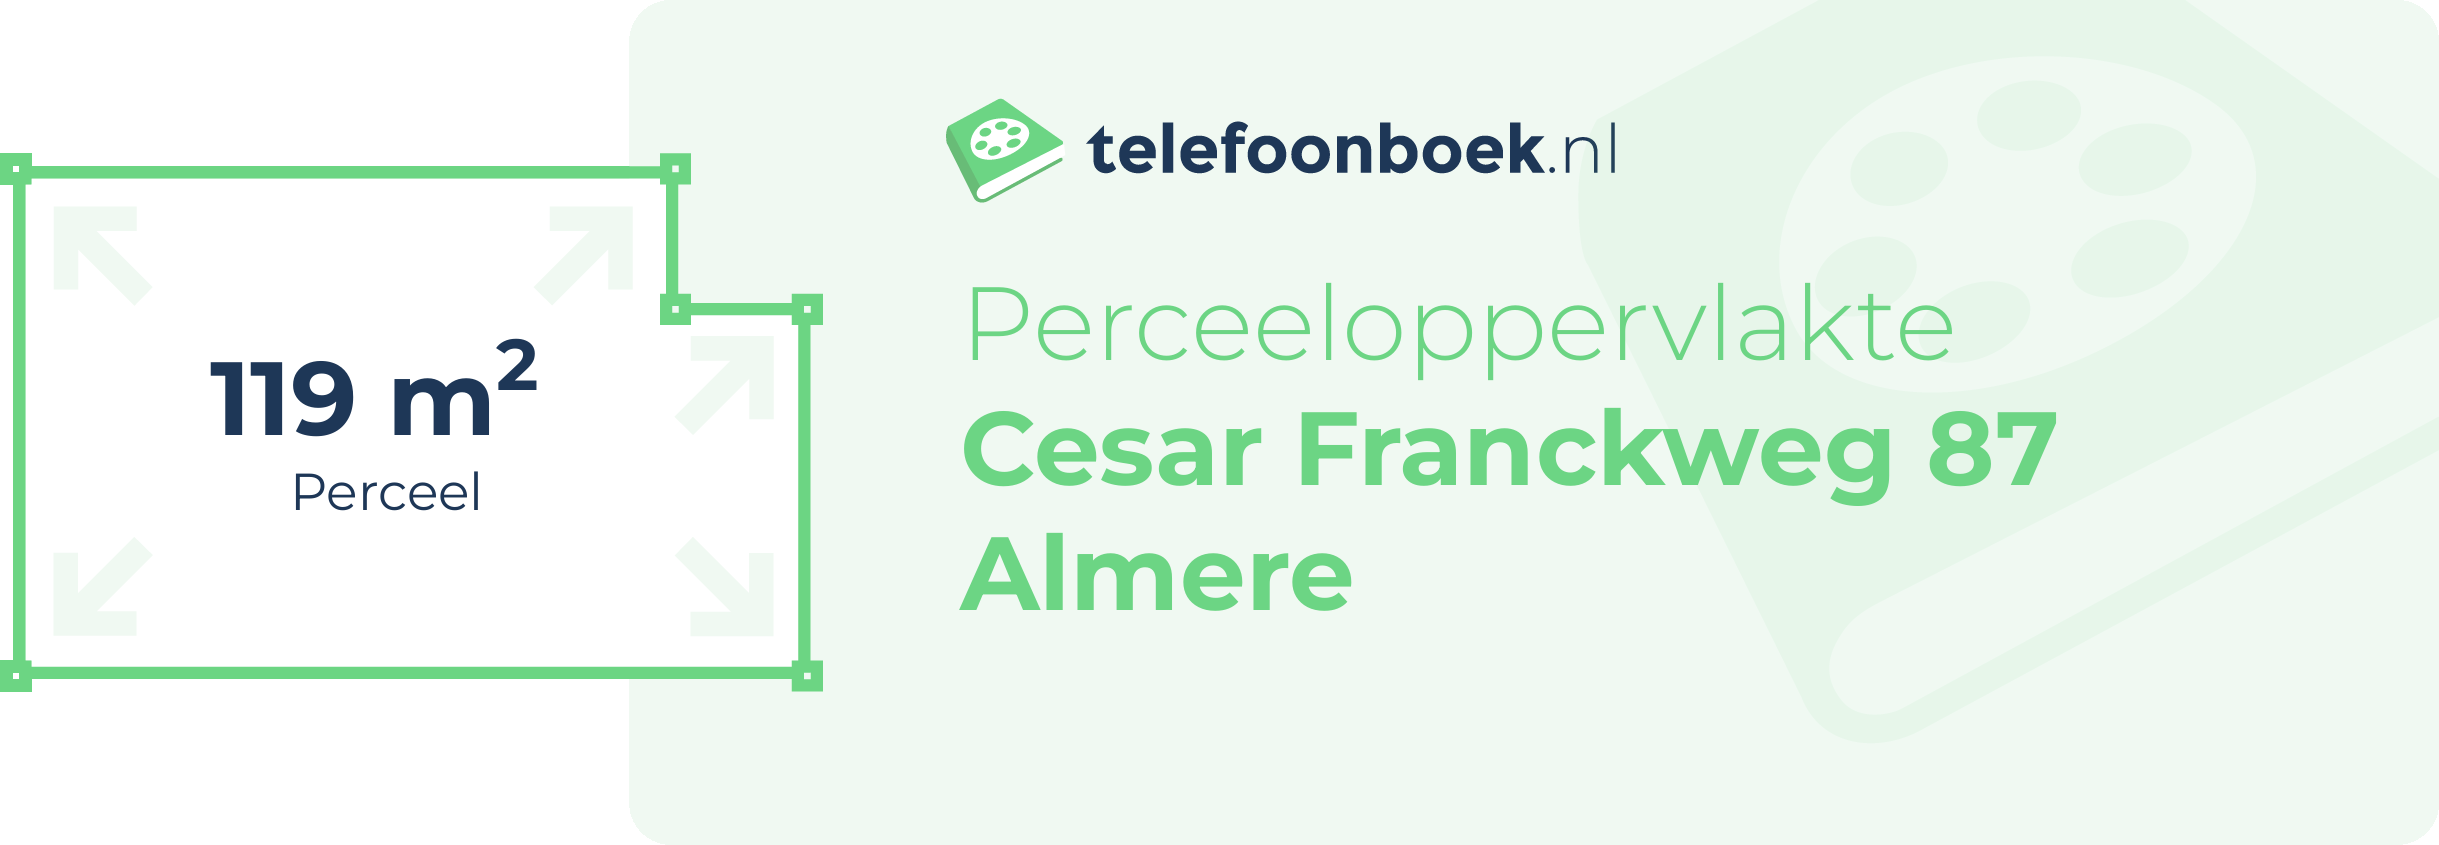 Perceeloppervlakte Cesar Franckweg 87 Almere